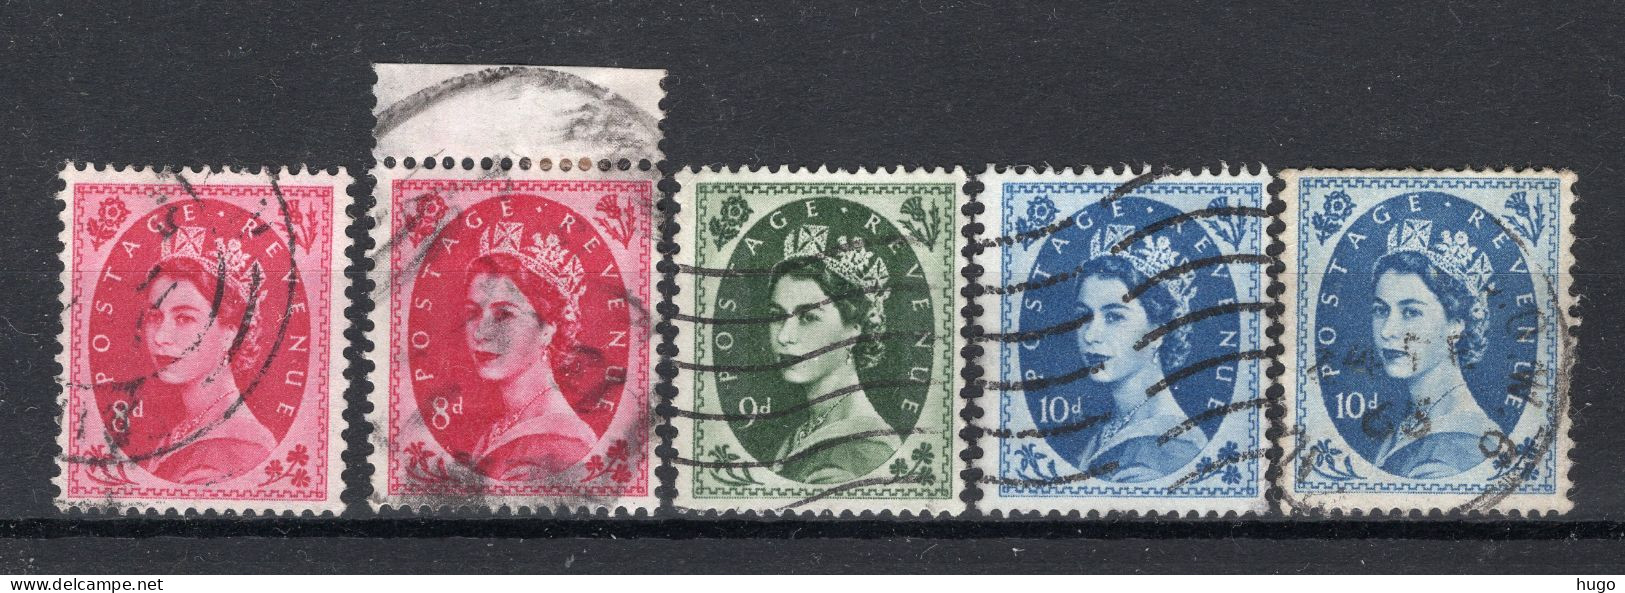 GROOT BRITTANIE Yt. 272/274° Gestempeld 1952-1954 - Used Stamps